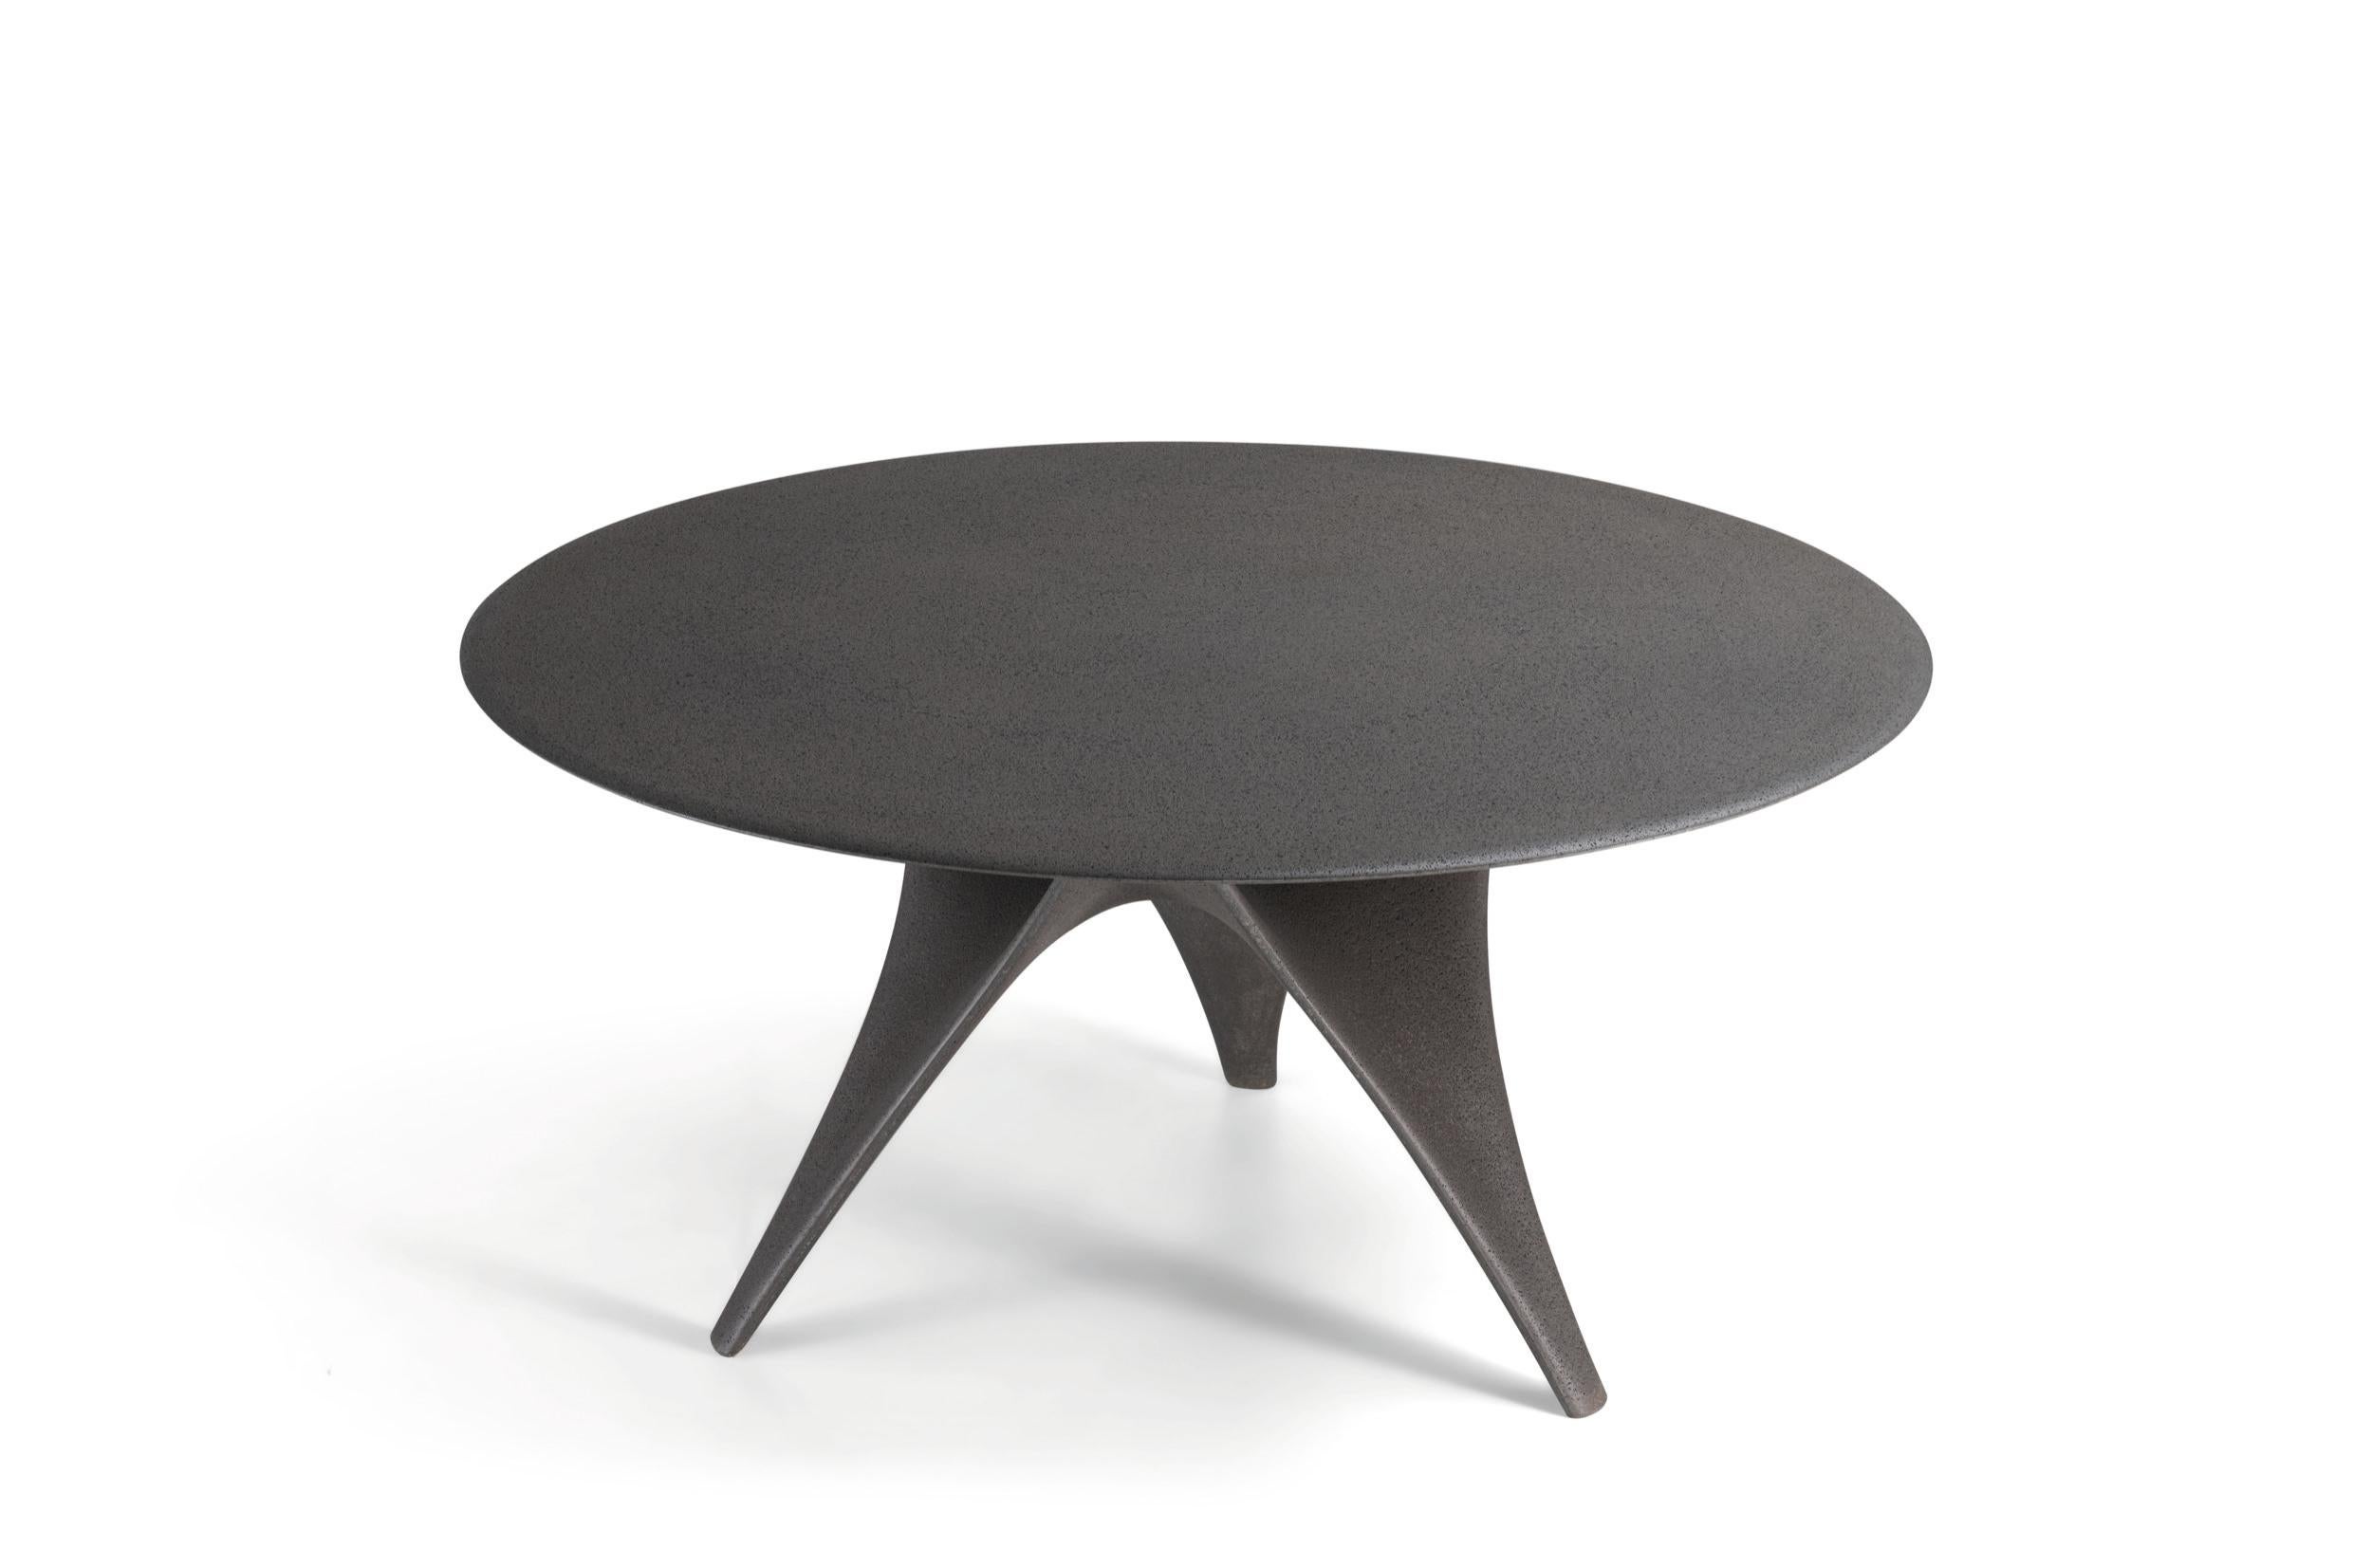 La table Arc de Foster + Partners a été réimaginée pour la vie en plein air, avec une finition tout en ciment. En gris Dolomite, mono-matériau et finition monochrome, cette version résistante aux intempéries incarne les mêmes formes fluides que